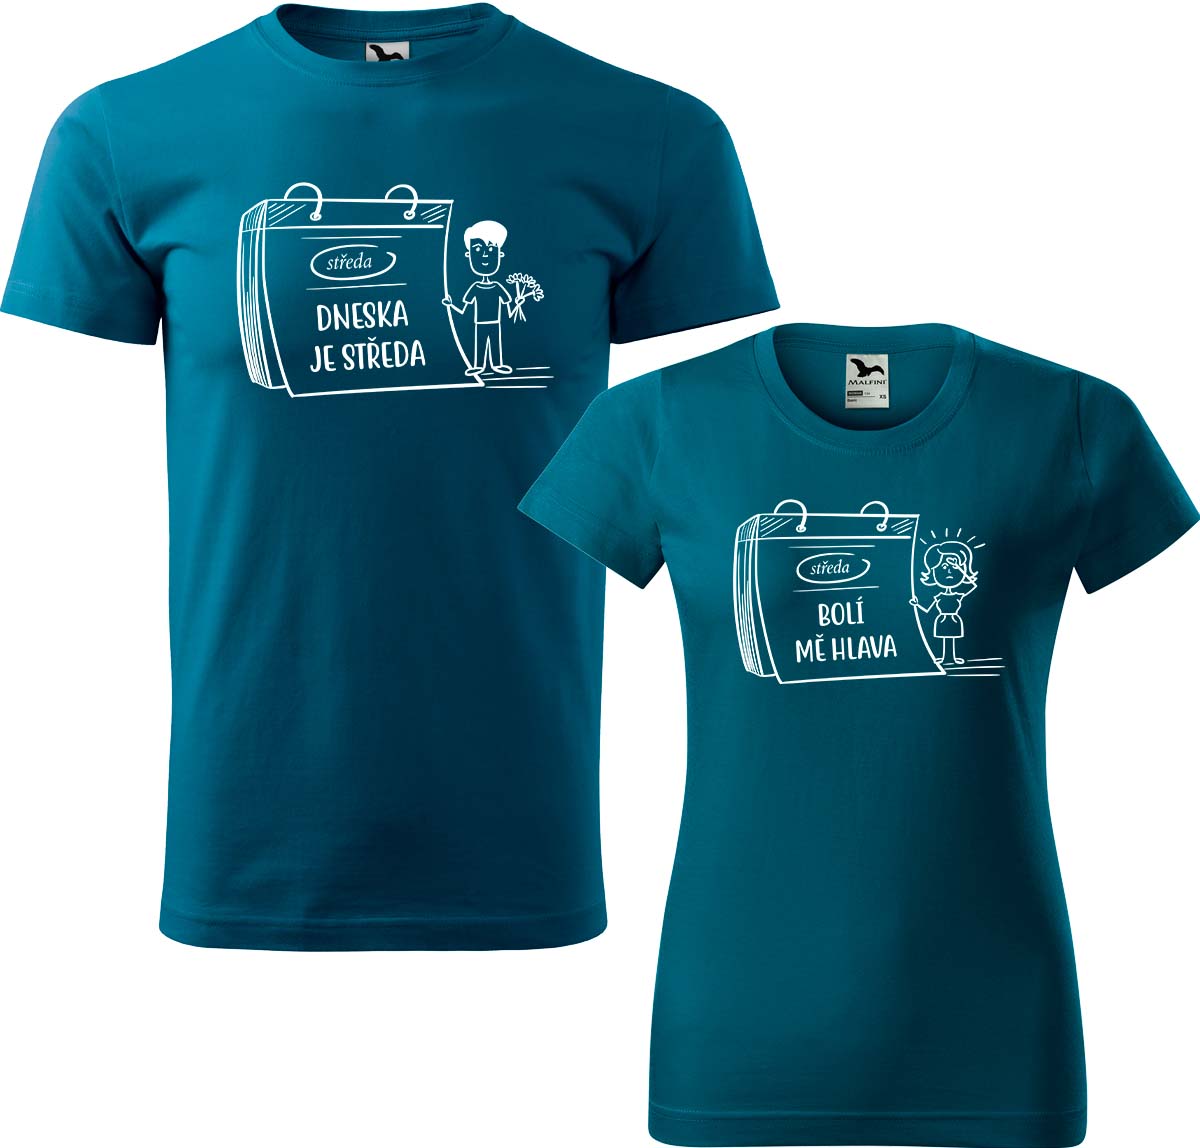 Trička pro páry - Dneska je středa Barva: Petrolejová (93), Velikost dámské tričko: M, Velikost pánské tričko: XL